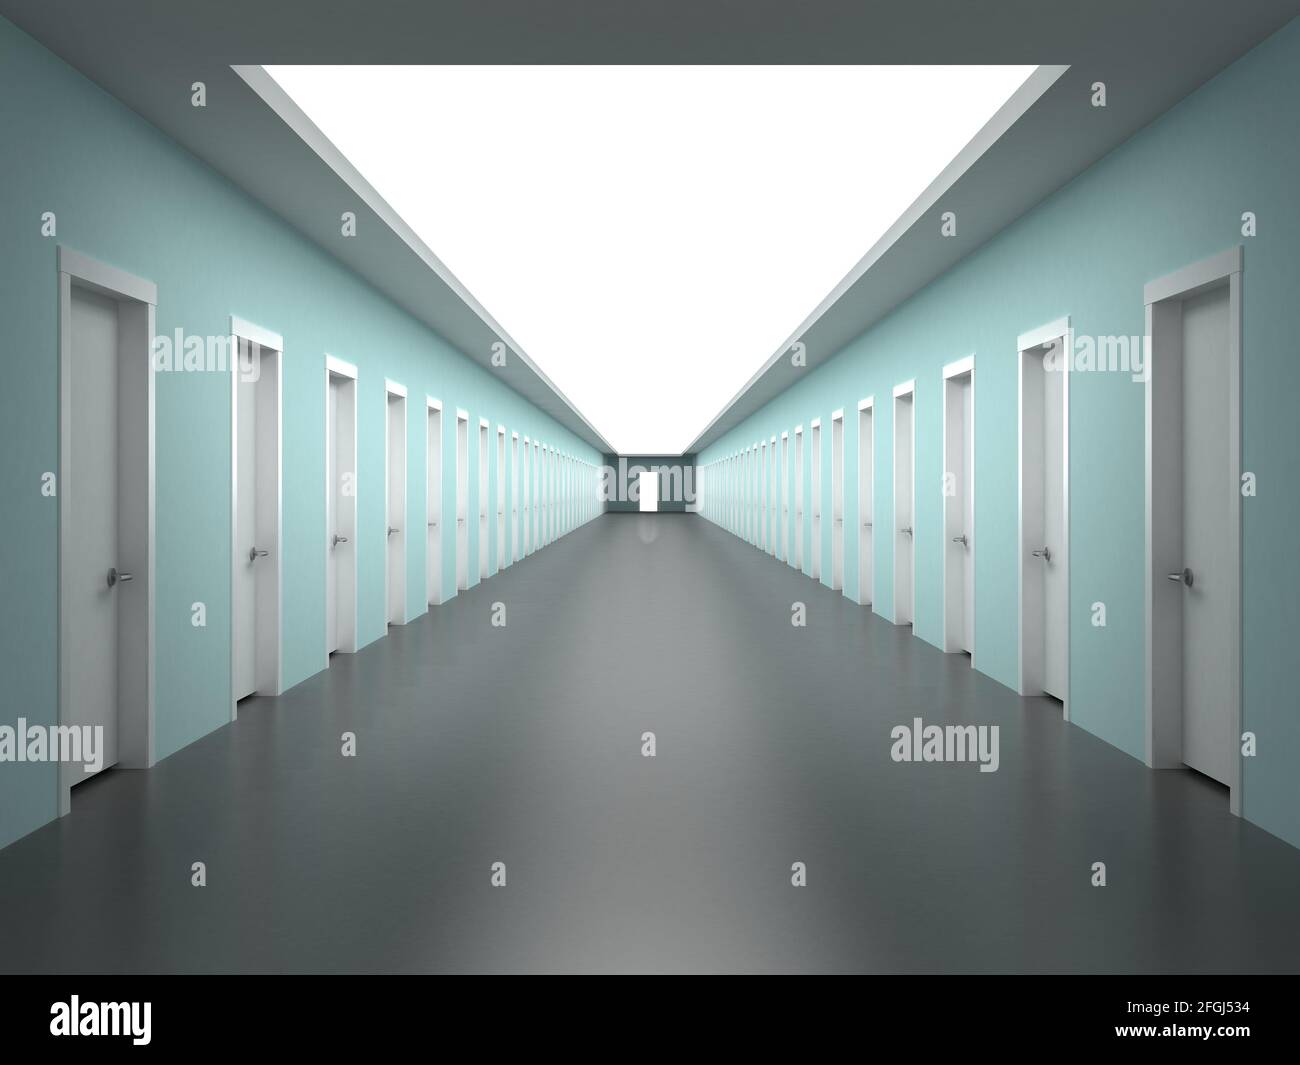 Corridoio in un edificio con la prospettiva di uffici infiniti Foto Stock